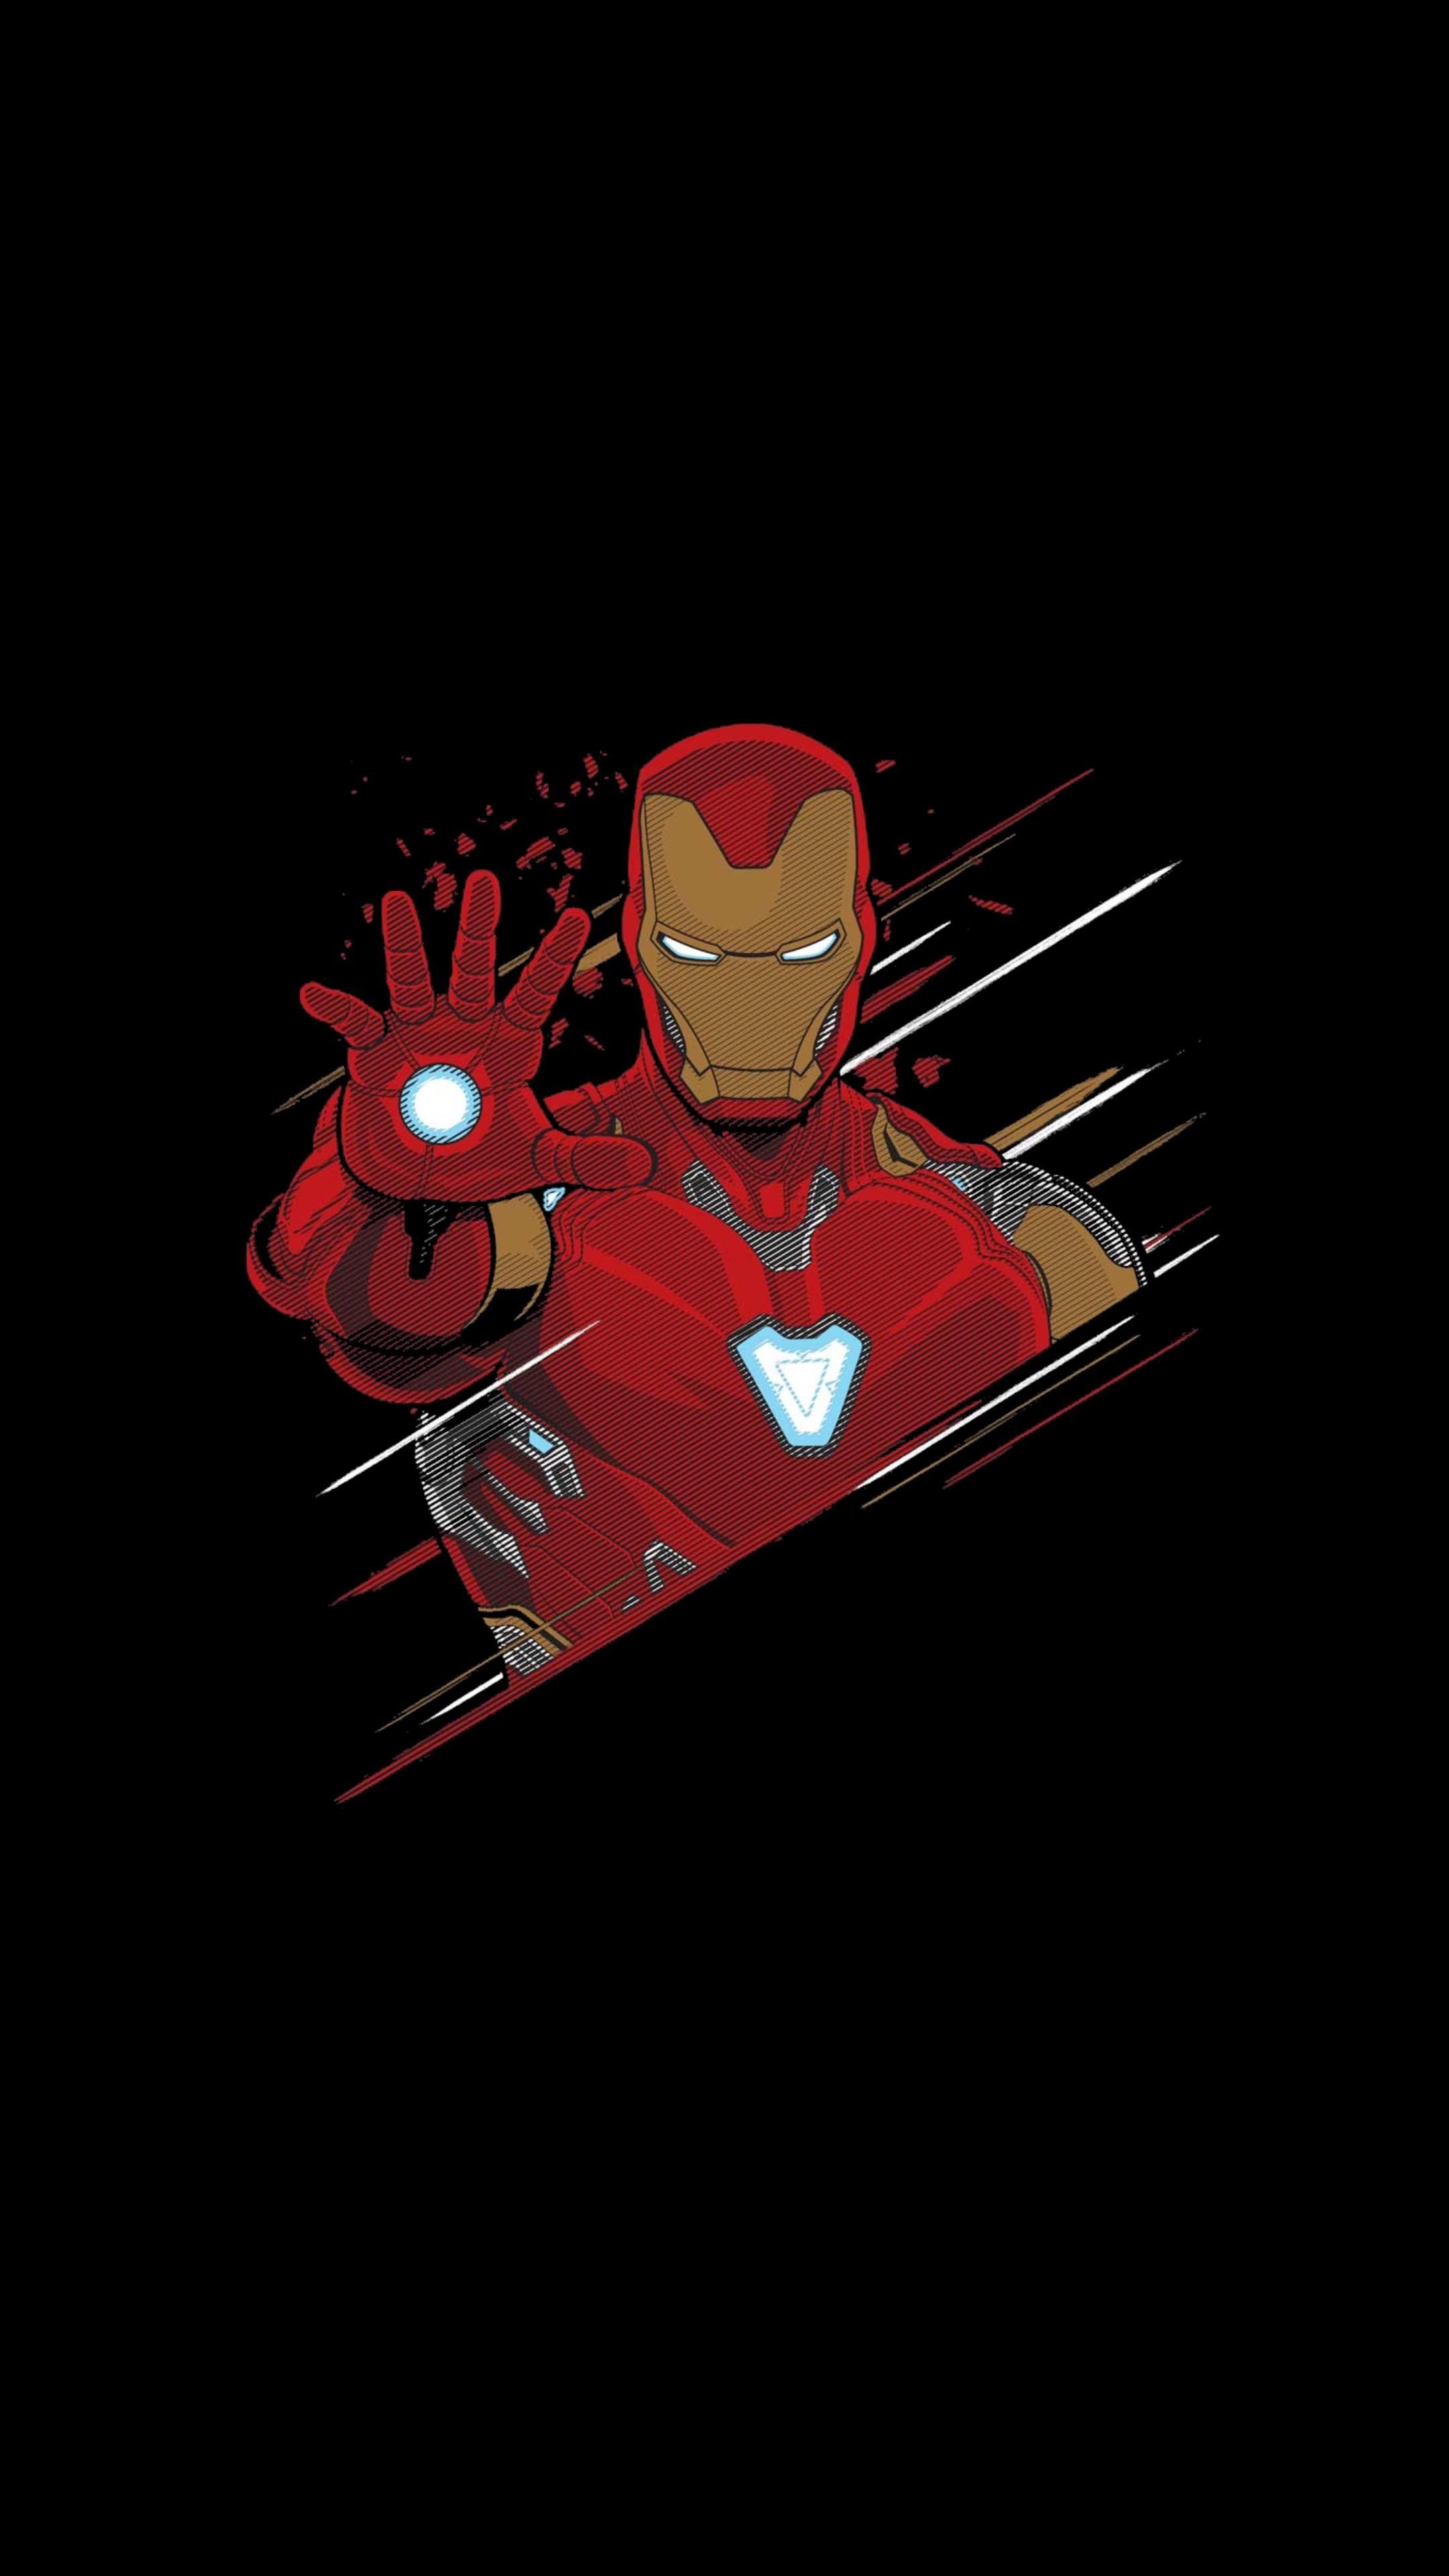 Iron Man: Marvel, Avengers, Superhero. 2160x3840 4K Wallpaper.